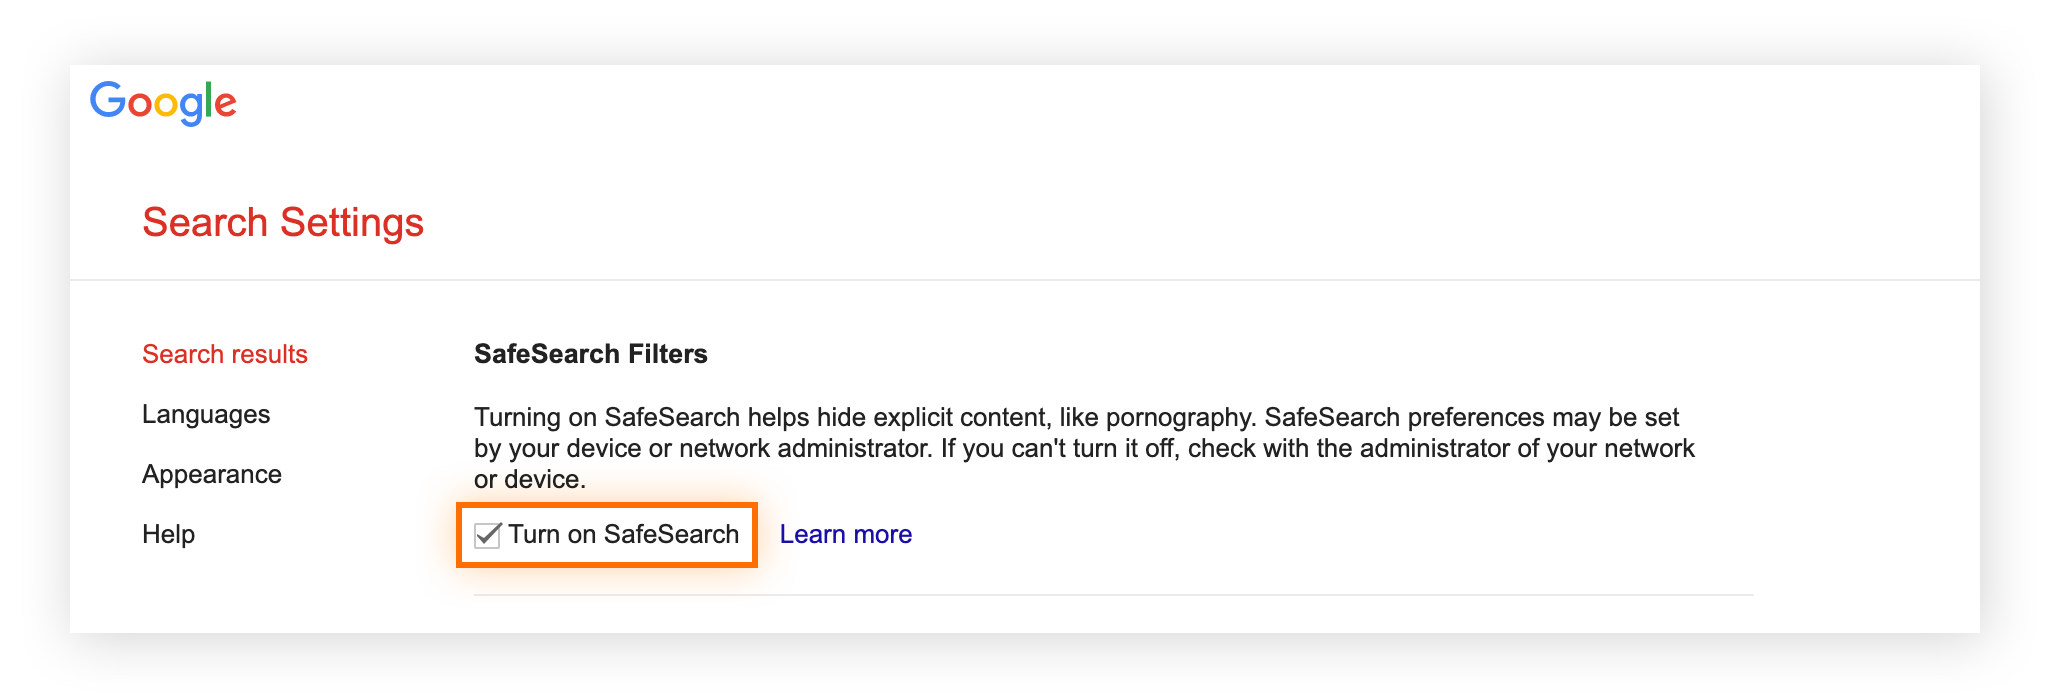 Gérez les paramètres de SafeSearch au niveau du compte utilisateur via les Paramètres de Google.